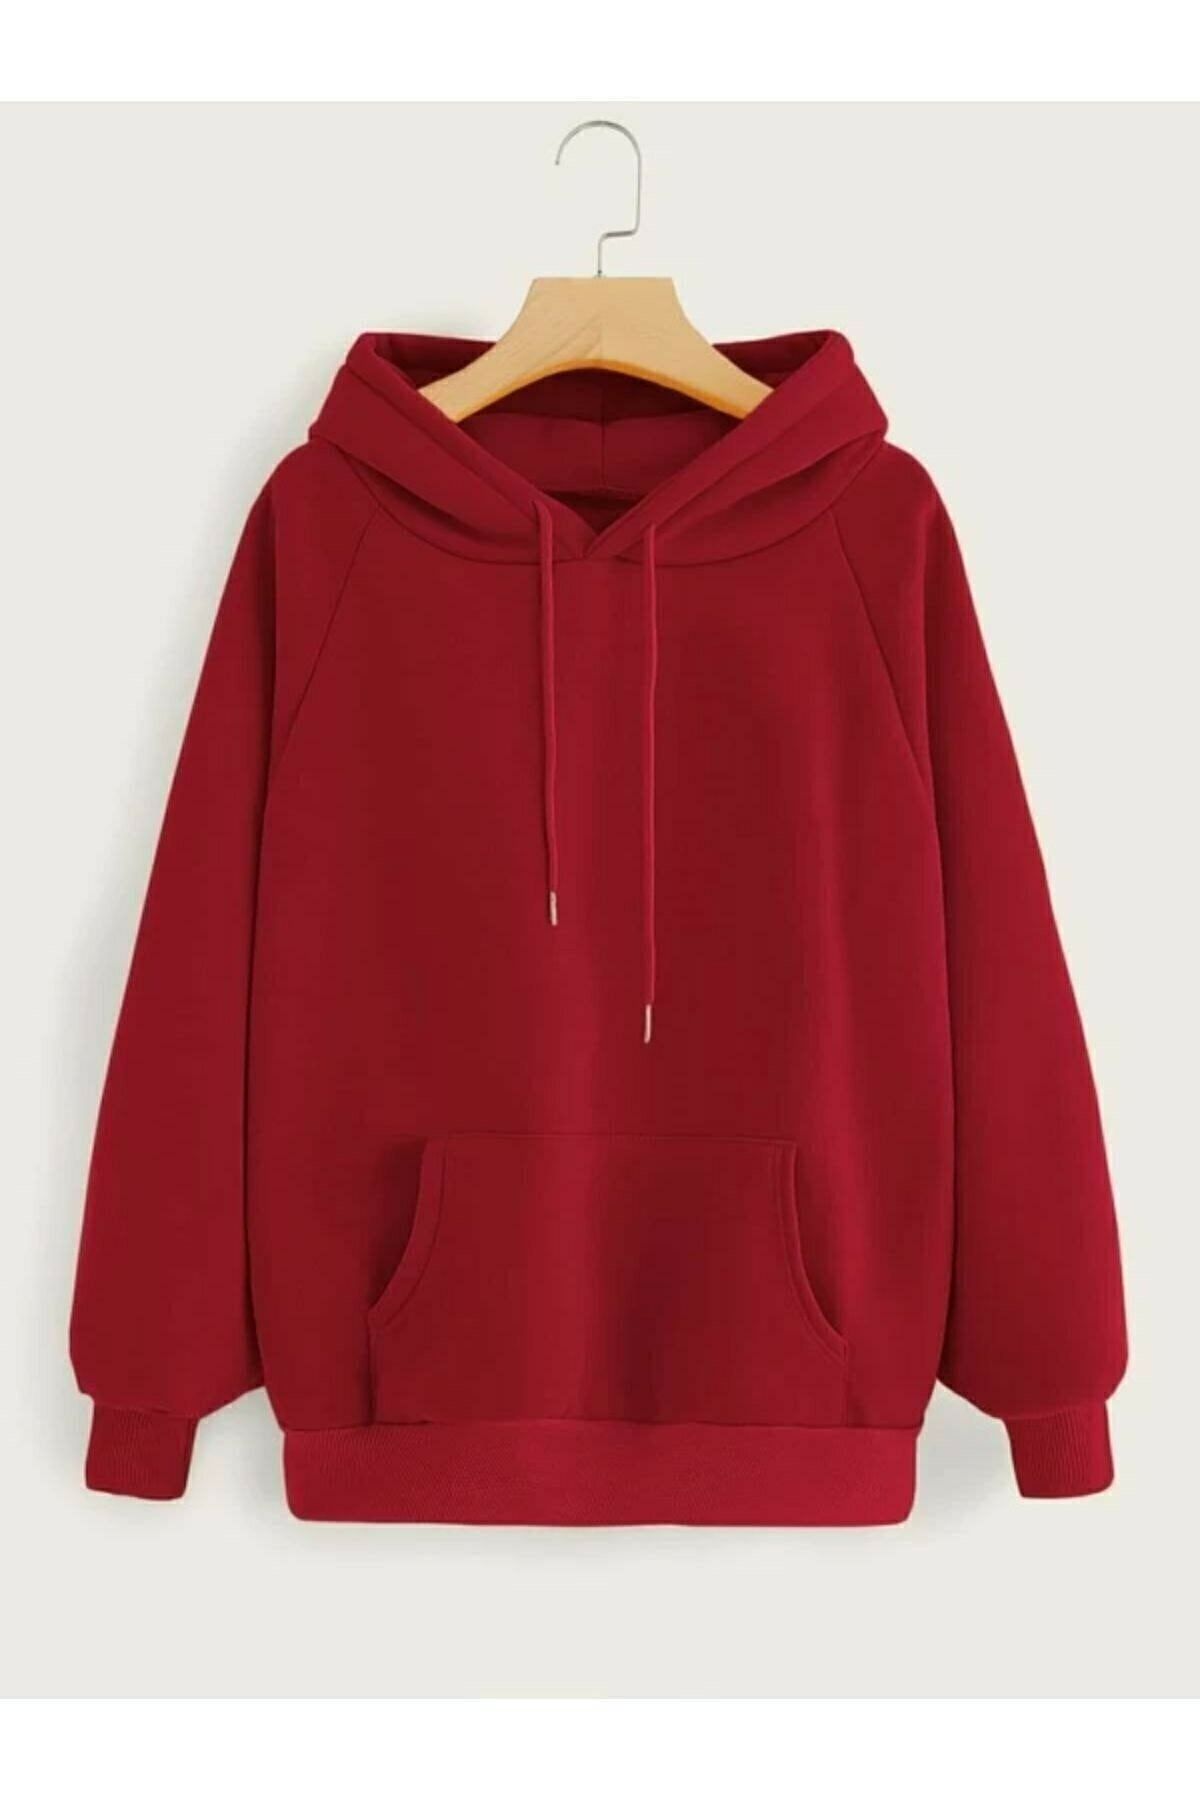 Genel Markalar Unisex Düz Kırmızı Kapüşonlu Sweatshirt Be3105